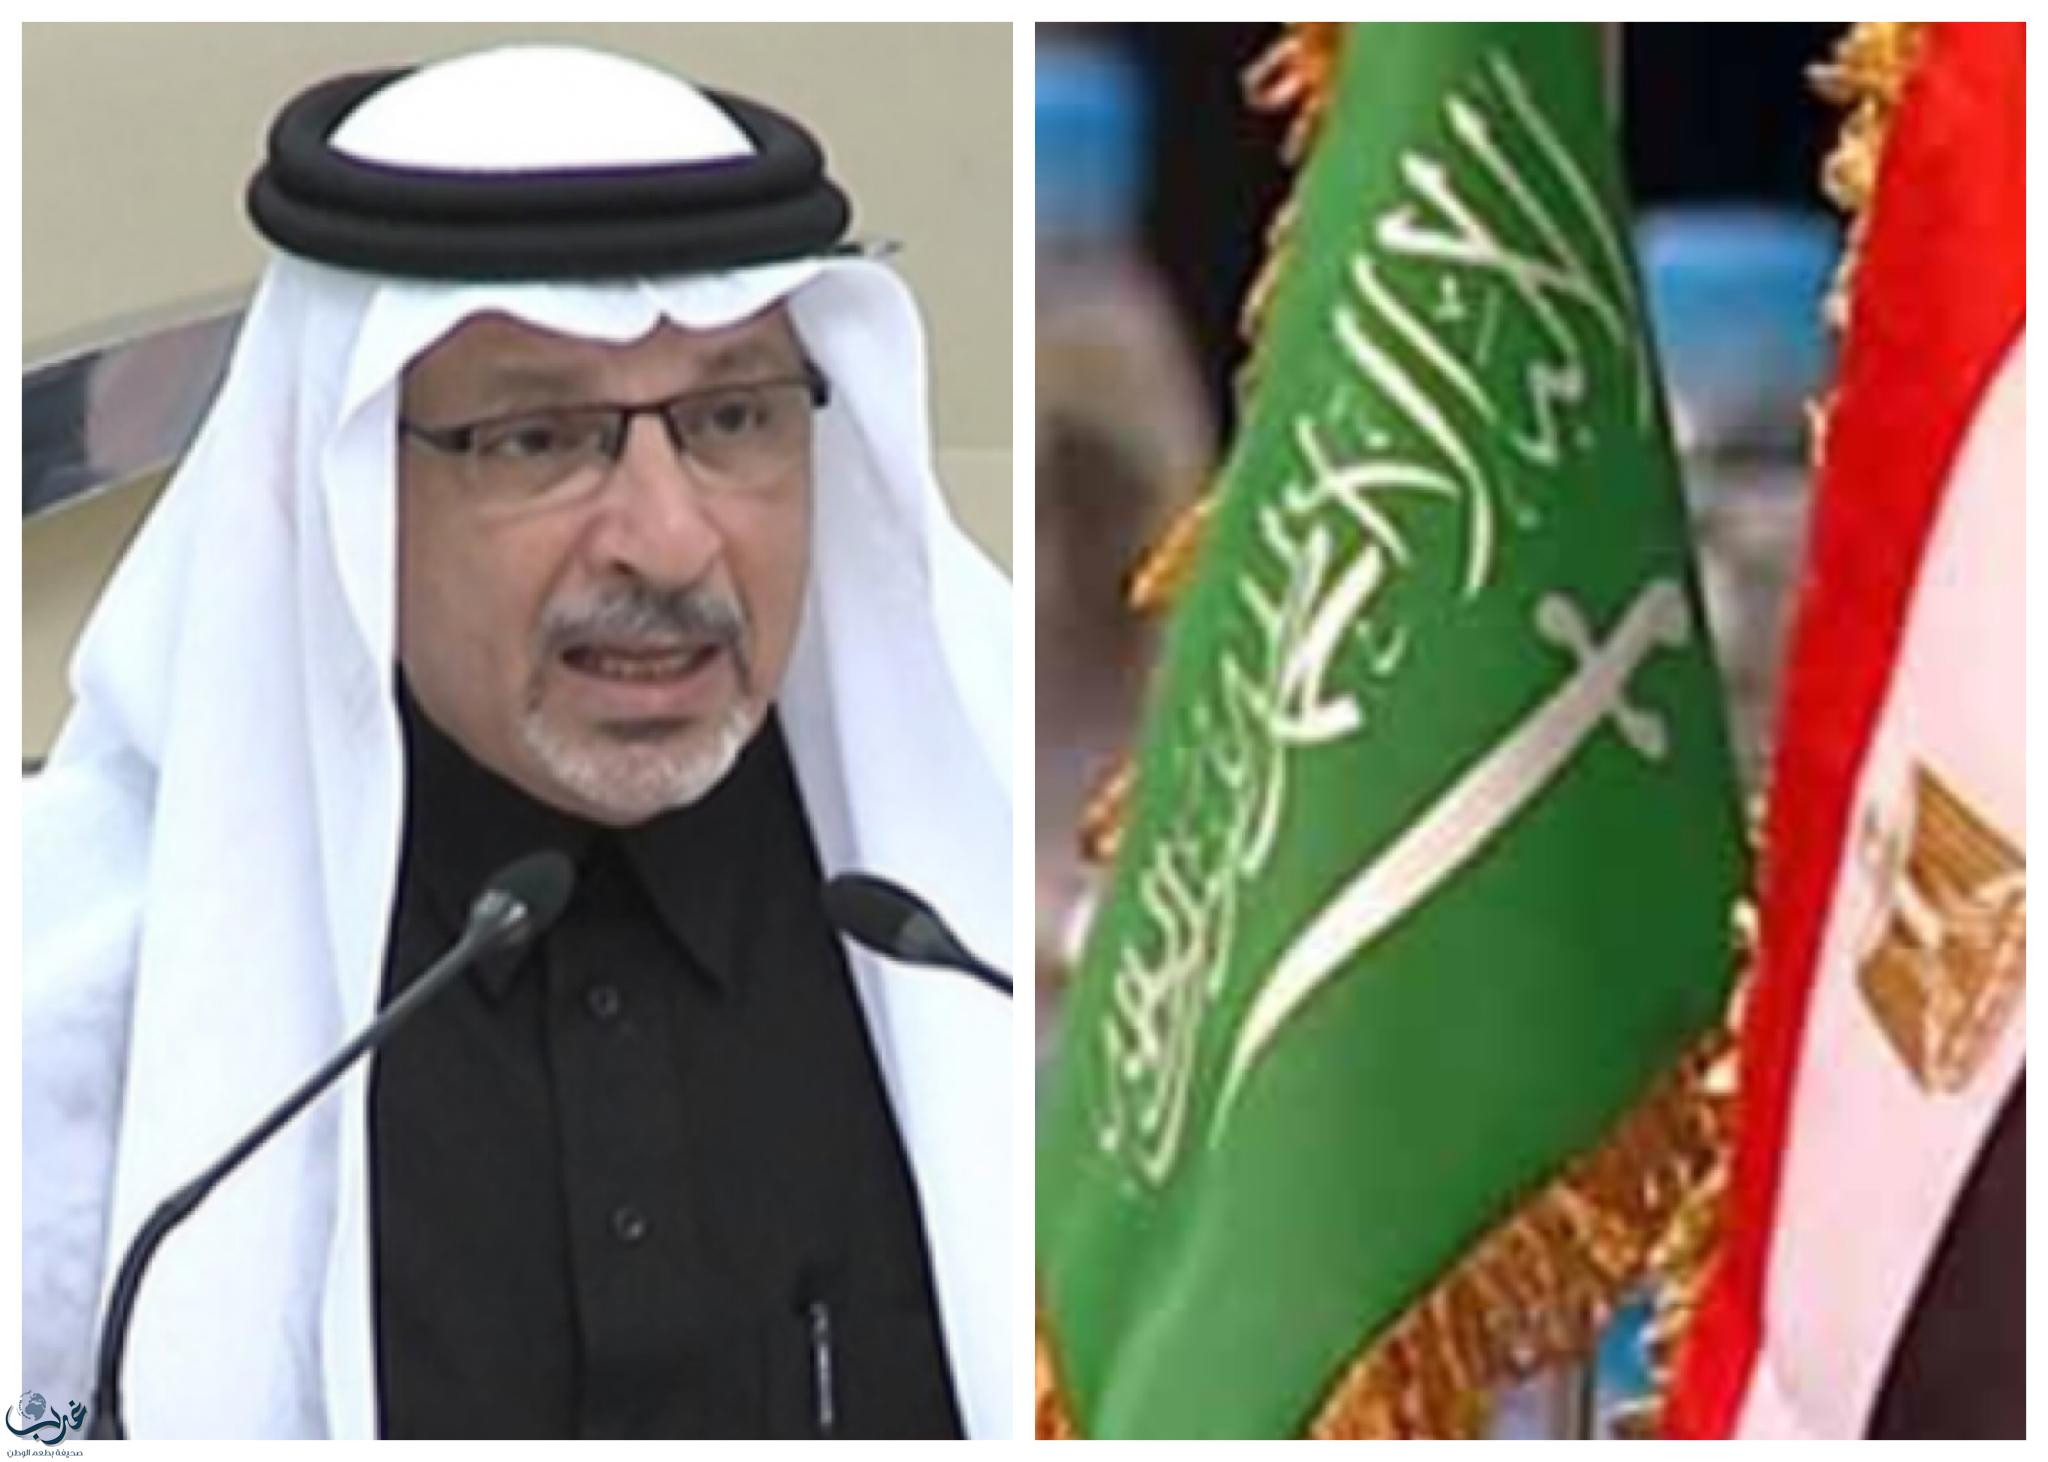 قطان: الحكومة السعودية توافق على أربع اتفاقيات بين المملكة ومصر